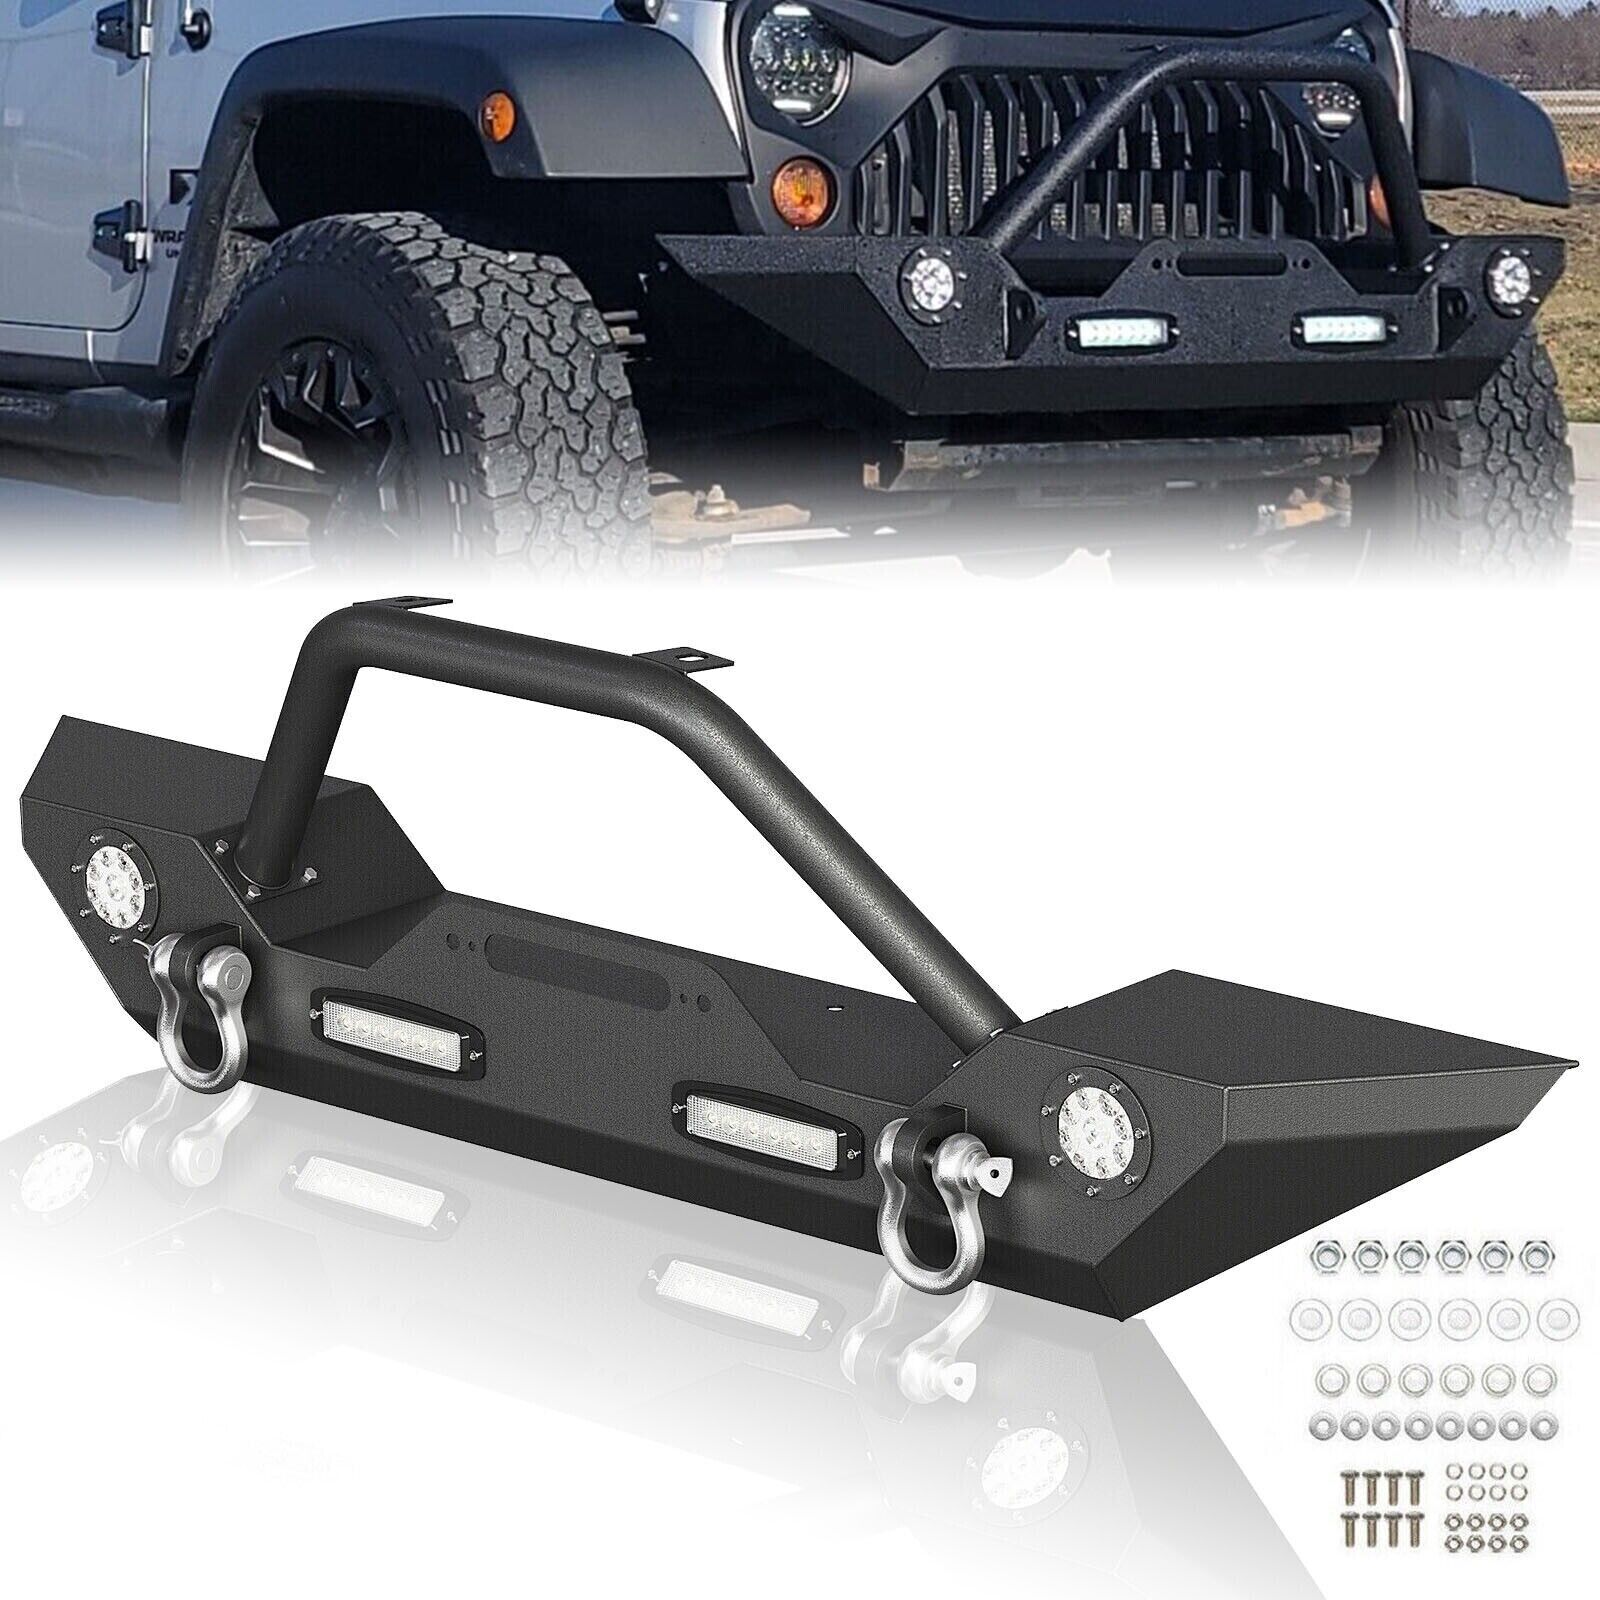 Front / Rear Bumper for 2007-2018 Jeep Wrangler JK & Unlimited w/ Led Lights🎗